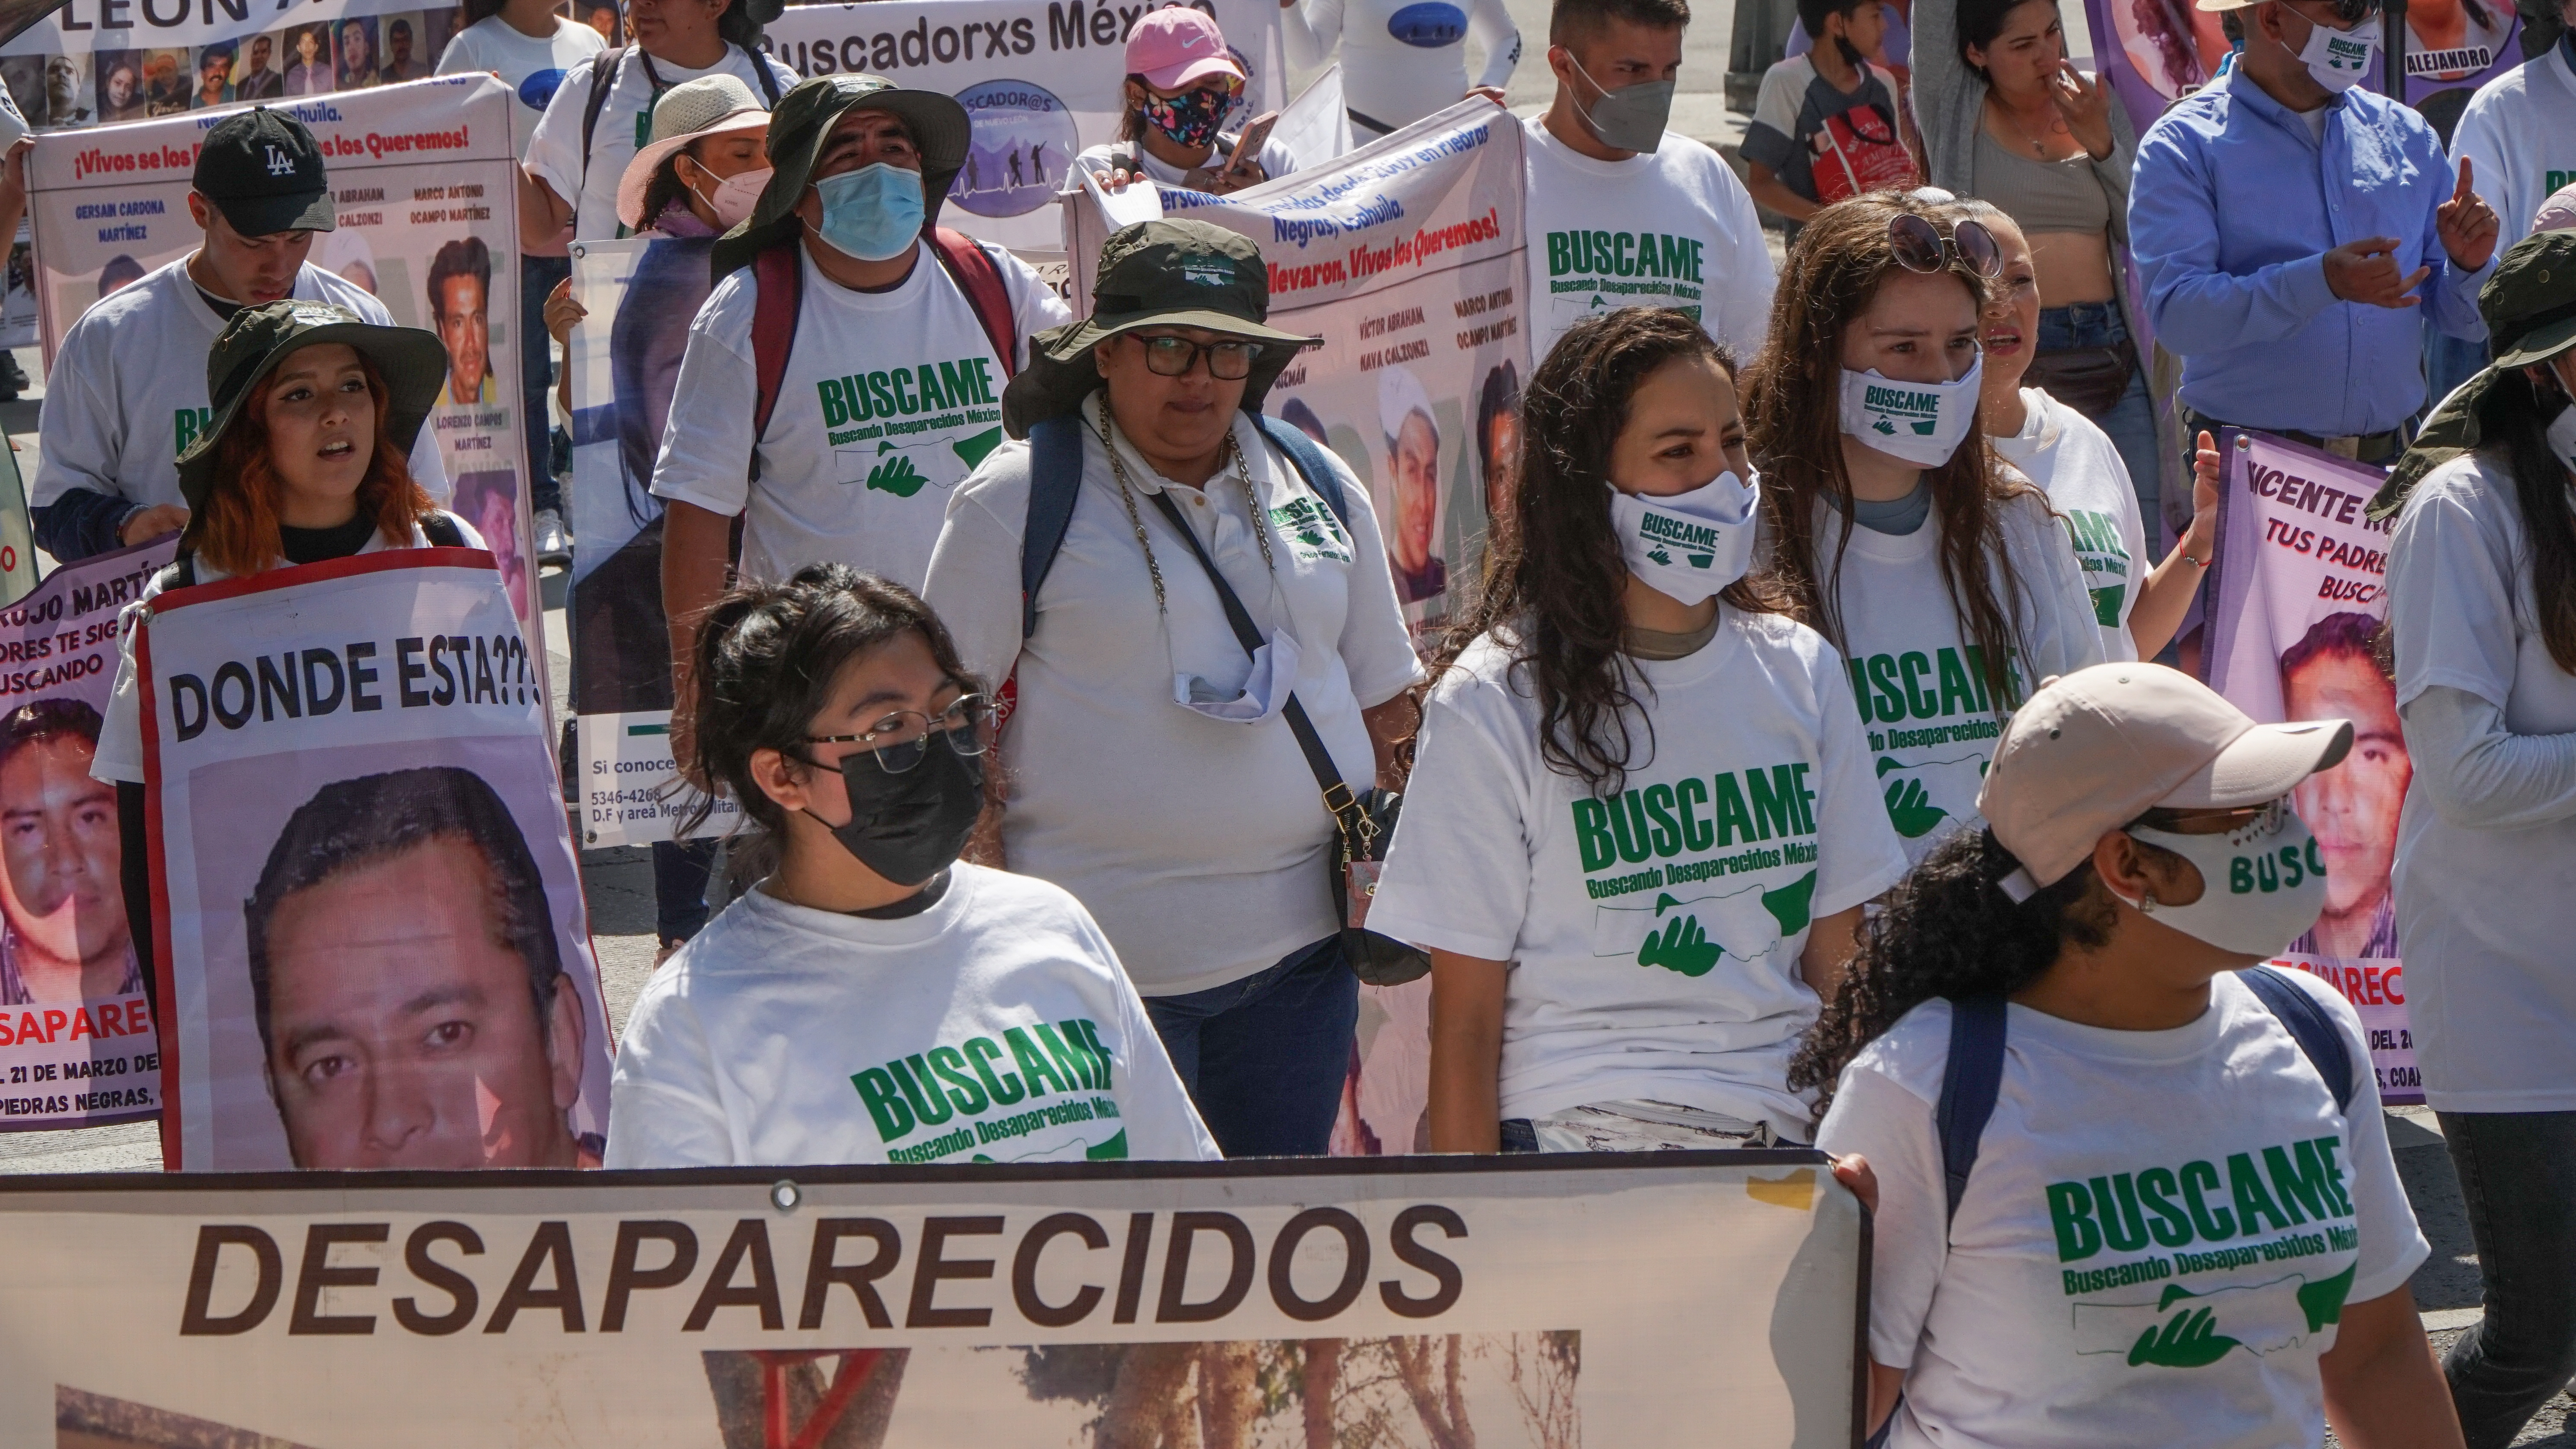 El Centro Prodh denunció el incremento en el número de desapariciones
Foto: Karina Hernández / Infobae